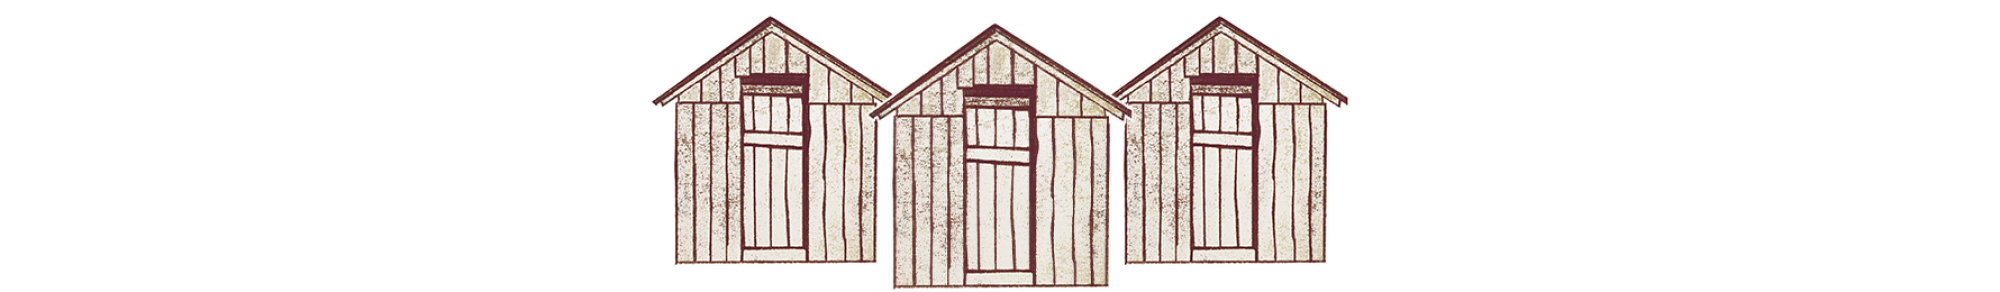 divisor de sección - ilustración de tres casas